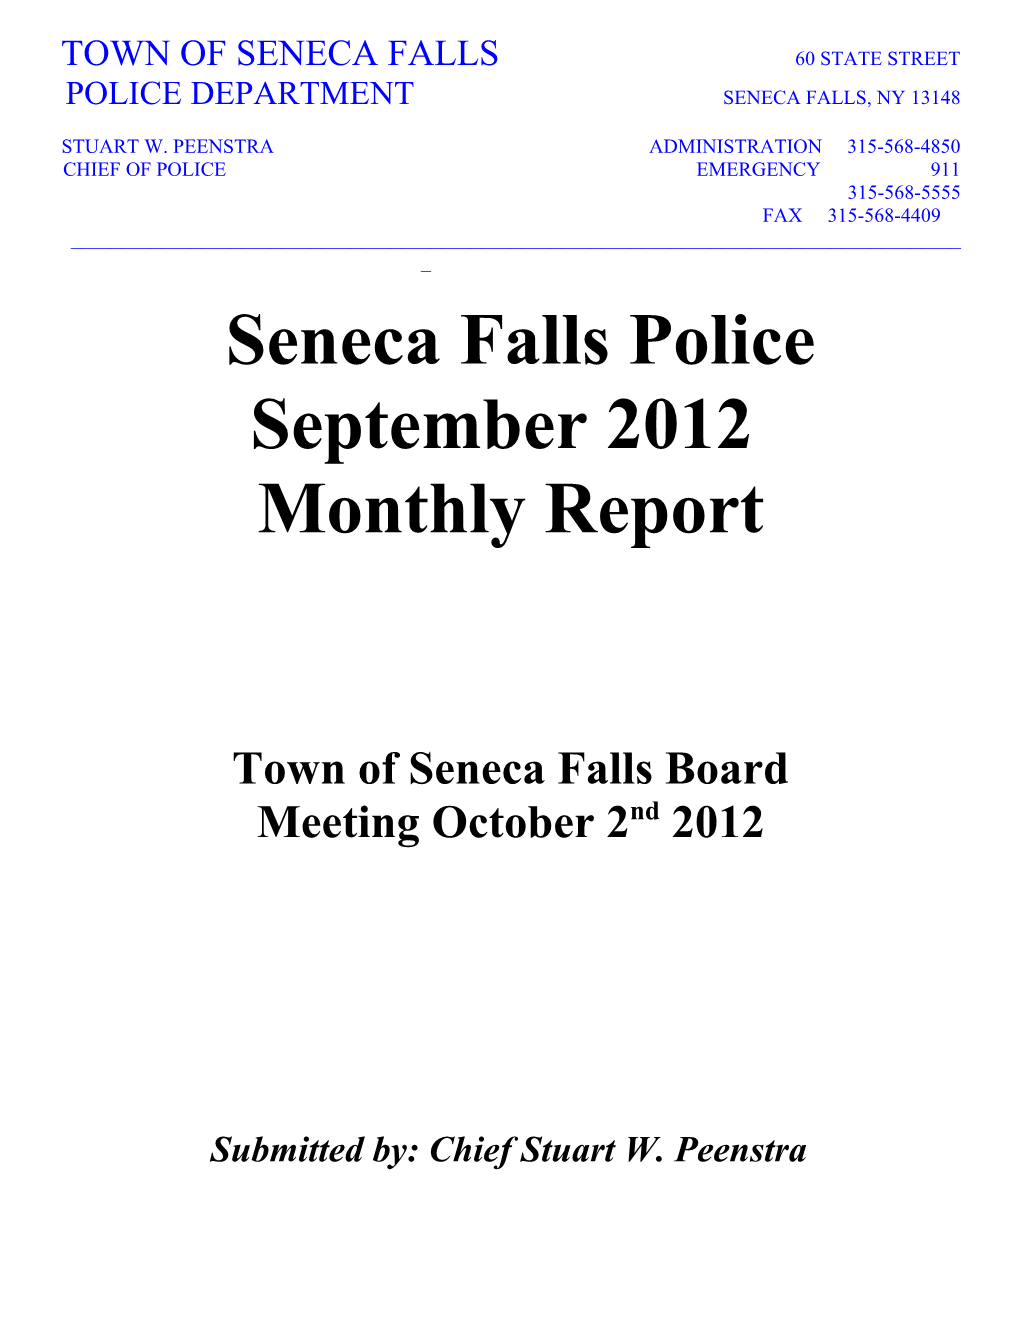 Town of Seneca Falls Board Meeting October 2Nd 2012